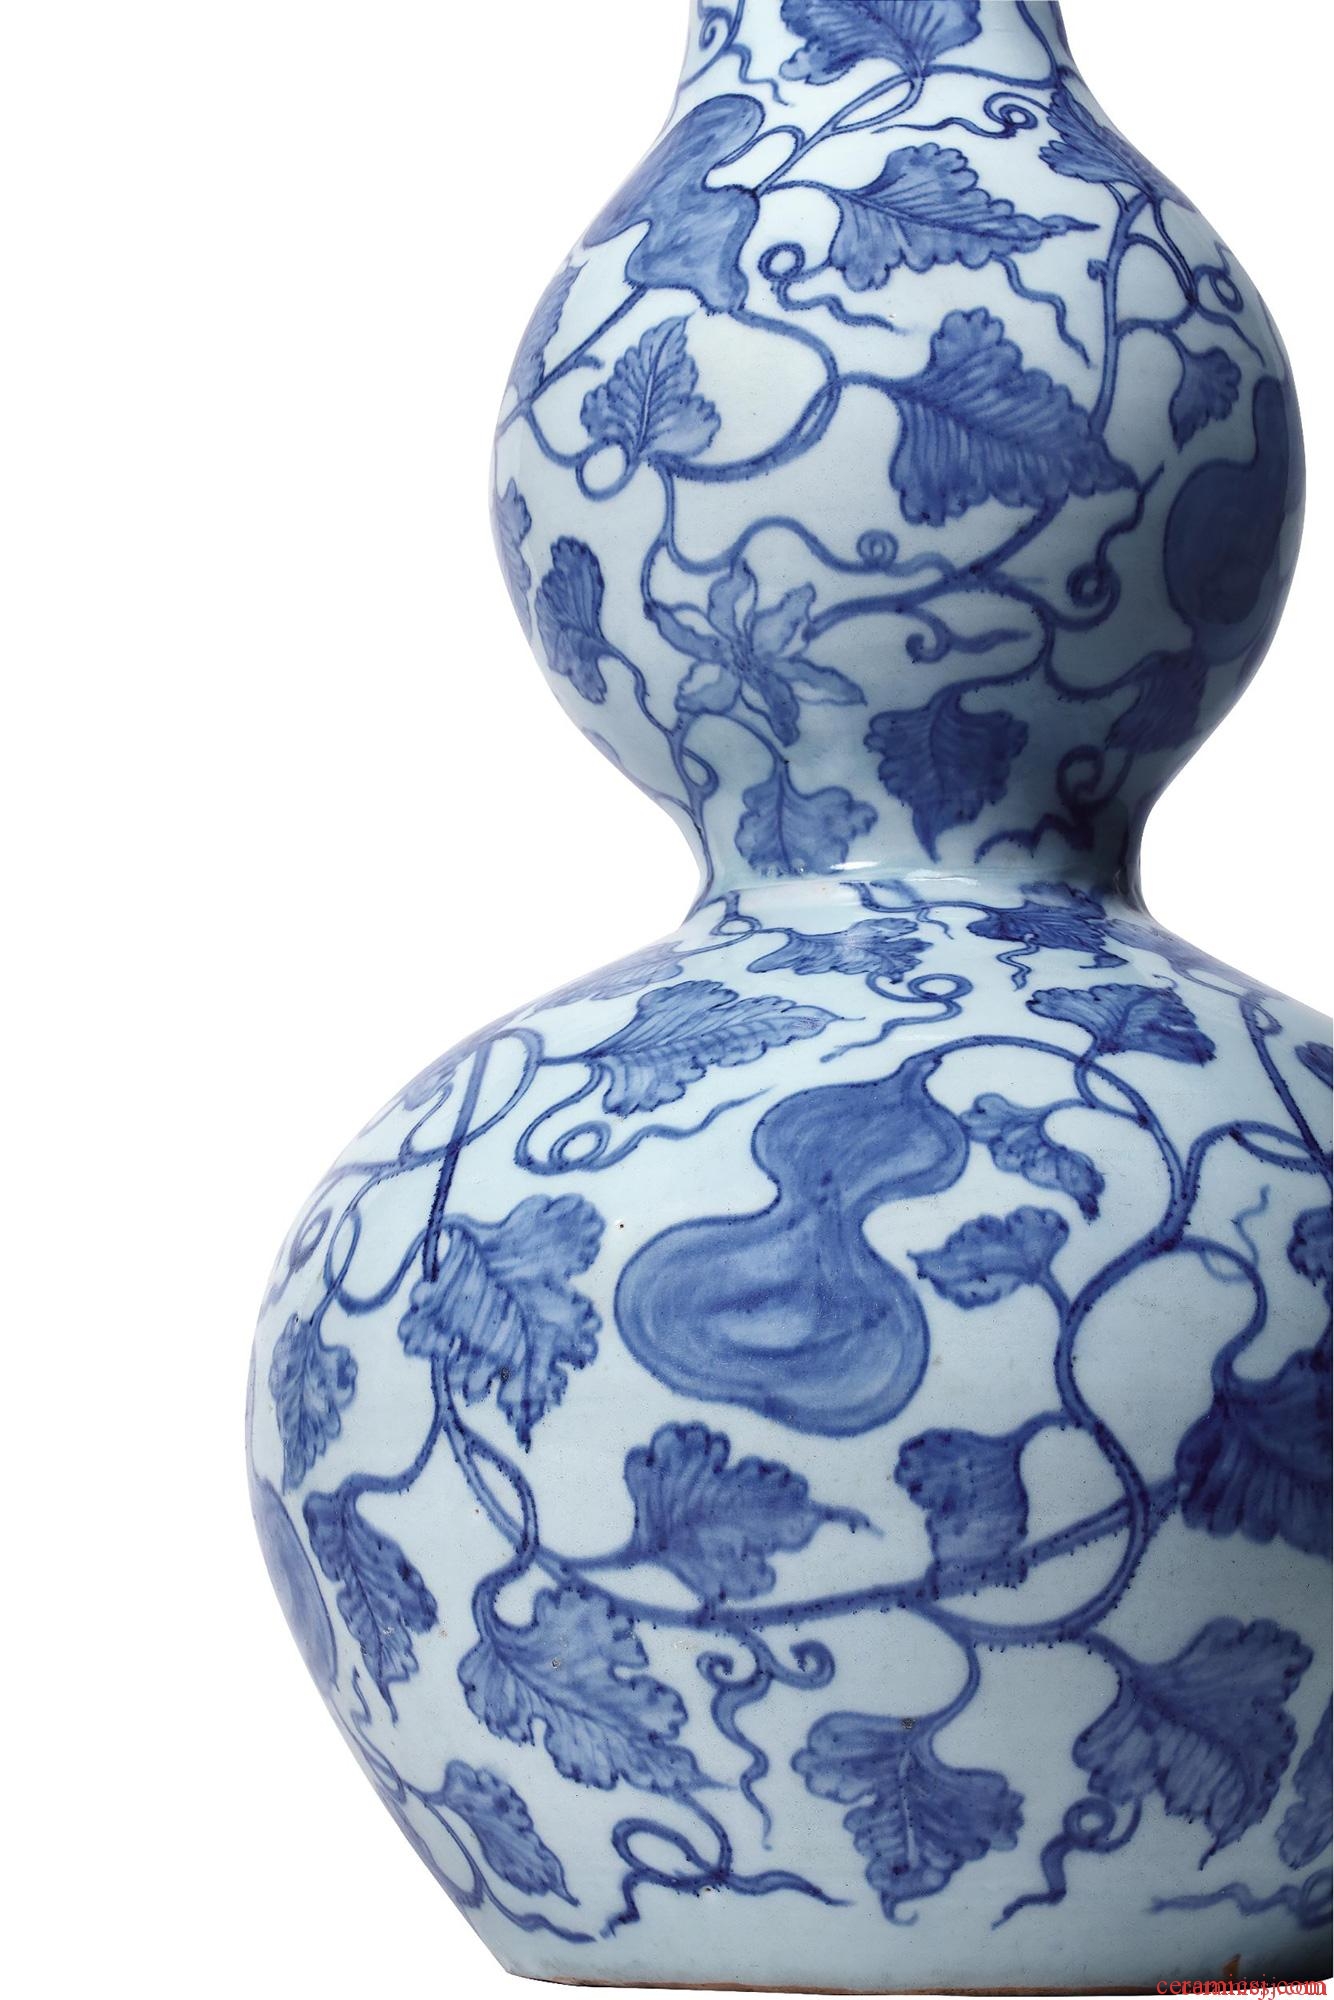 元 青花纏枝牡丹紋葫蘆瓶 AN IMPORTANT LARGE EARLY BLUE AND WHITE DOUBLE-GOURD VASE YUAN DYNASTY, MID-14TH CENTURY